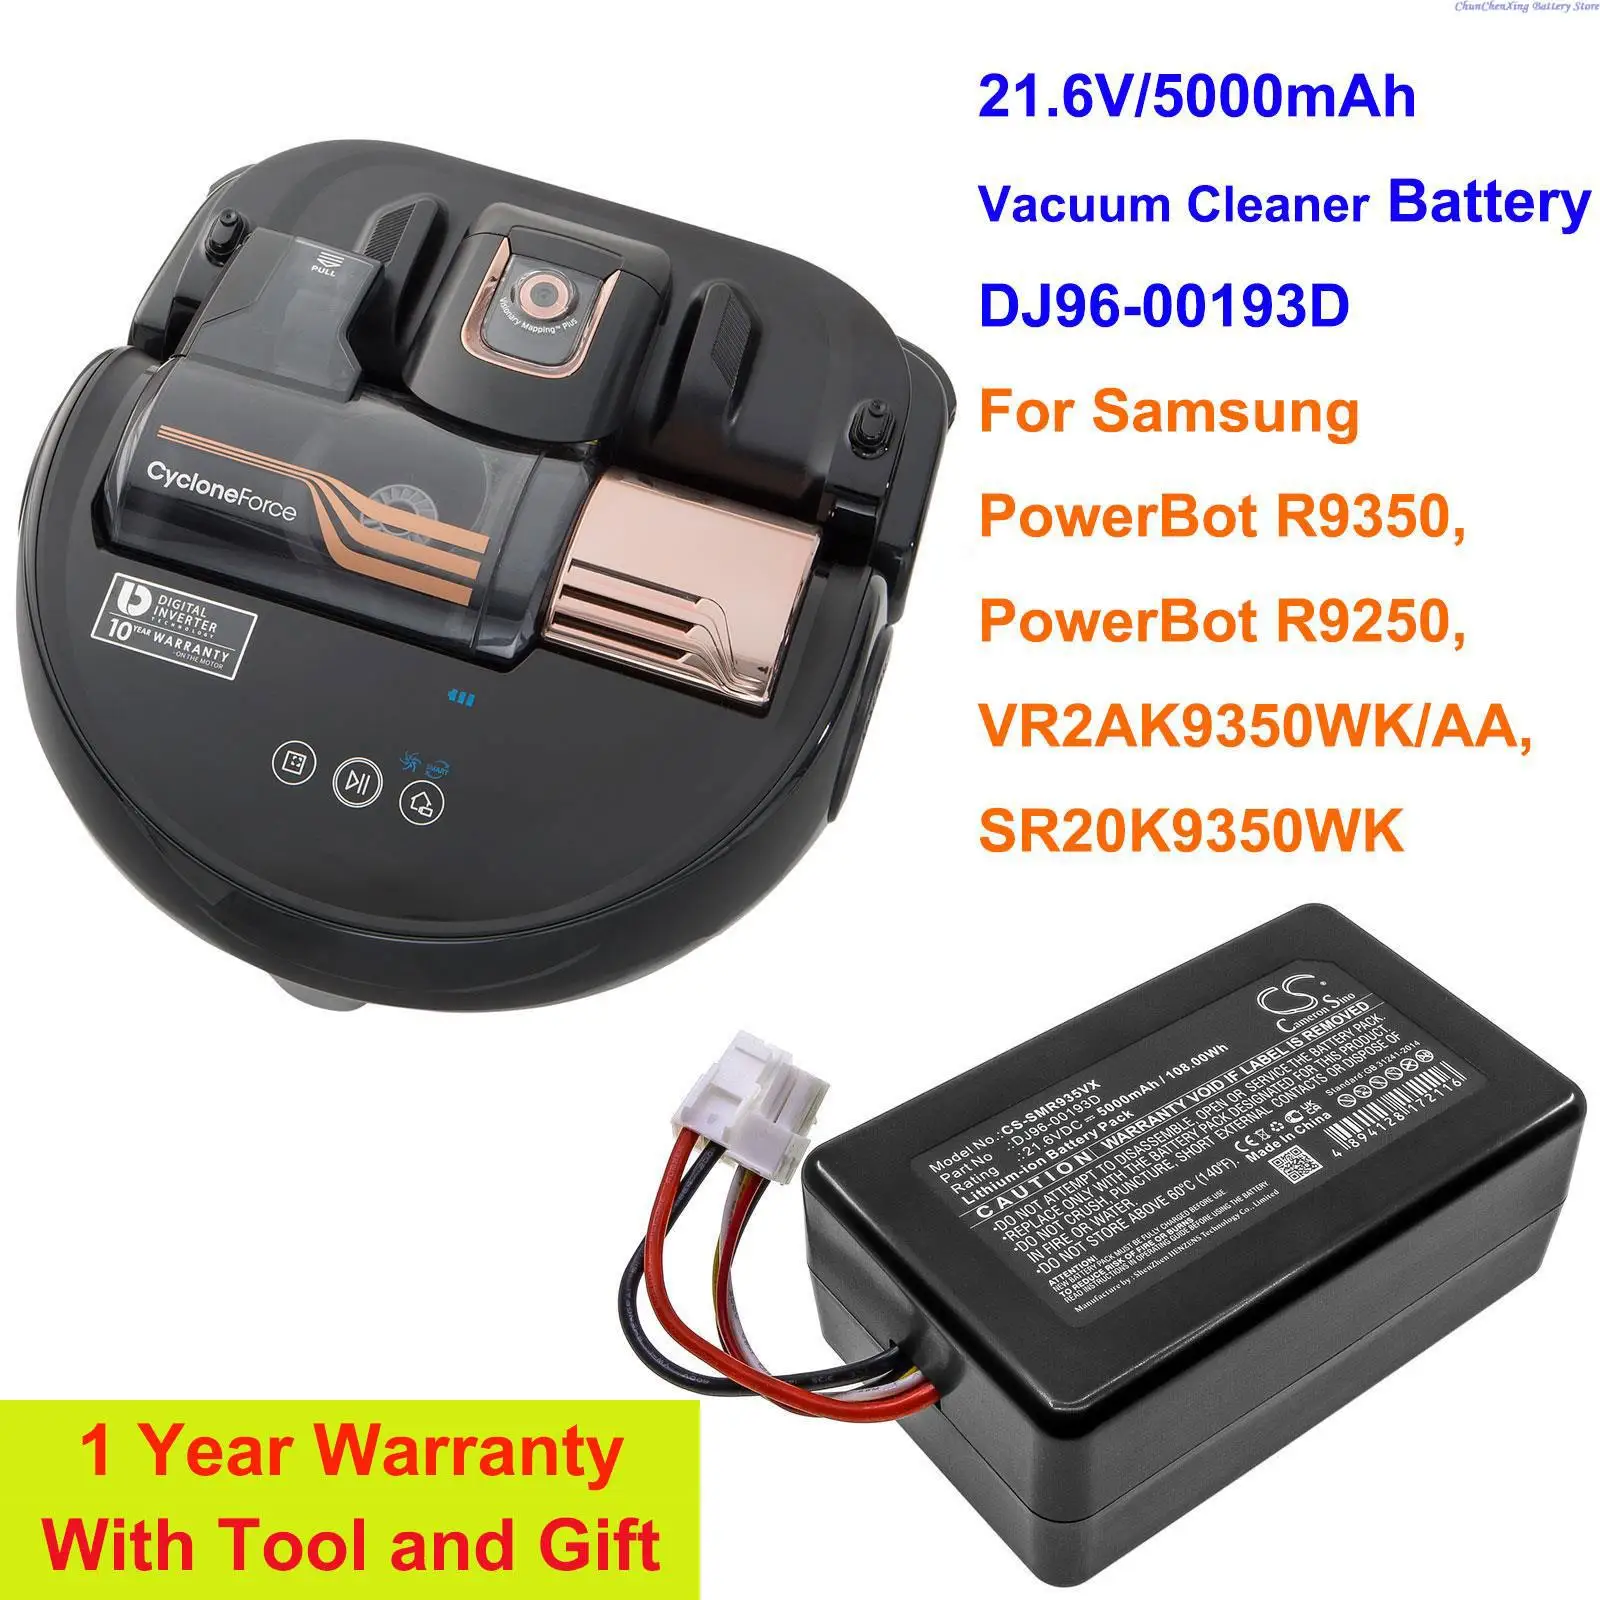 Cameron Kinijos 21.6 V/5000mAh Dulkių siurblys Baterija DJ96-00193D Samsung PowerBot R9350, R9250, VR2AK9350WK/AA, SR20K9350WK - 0